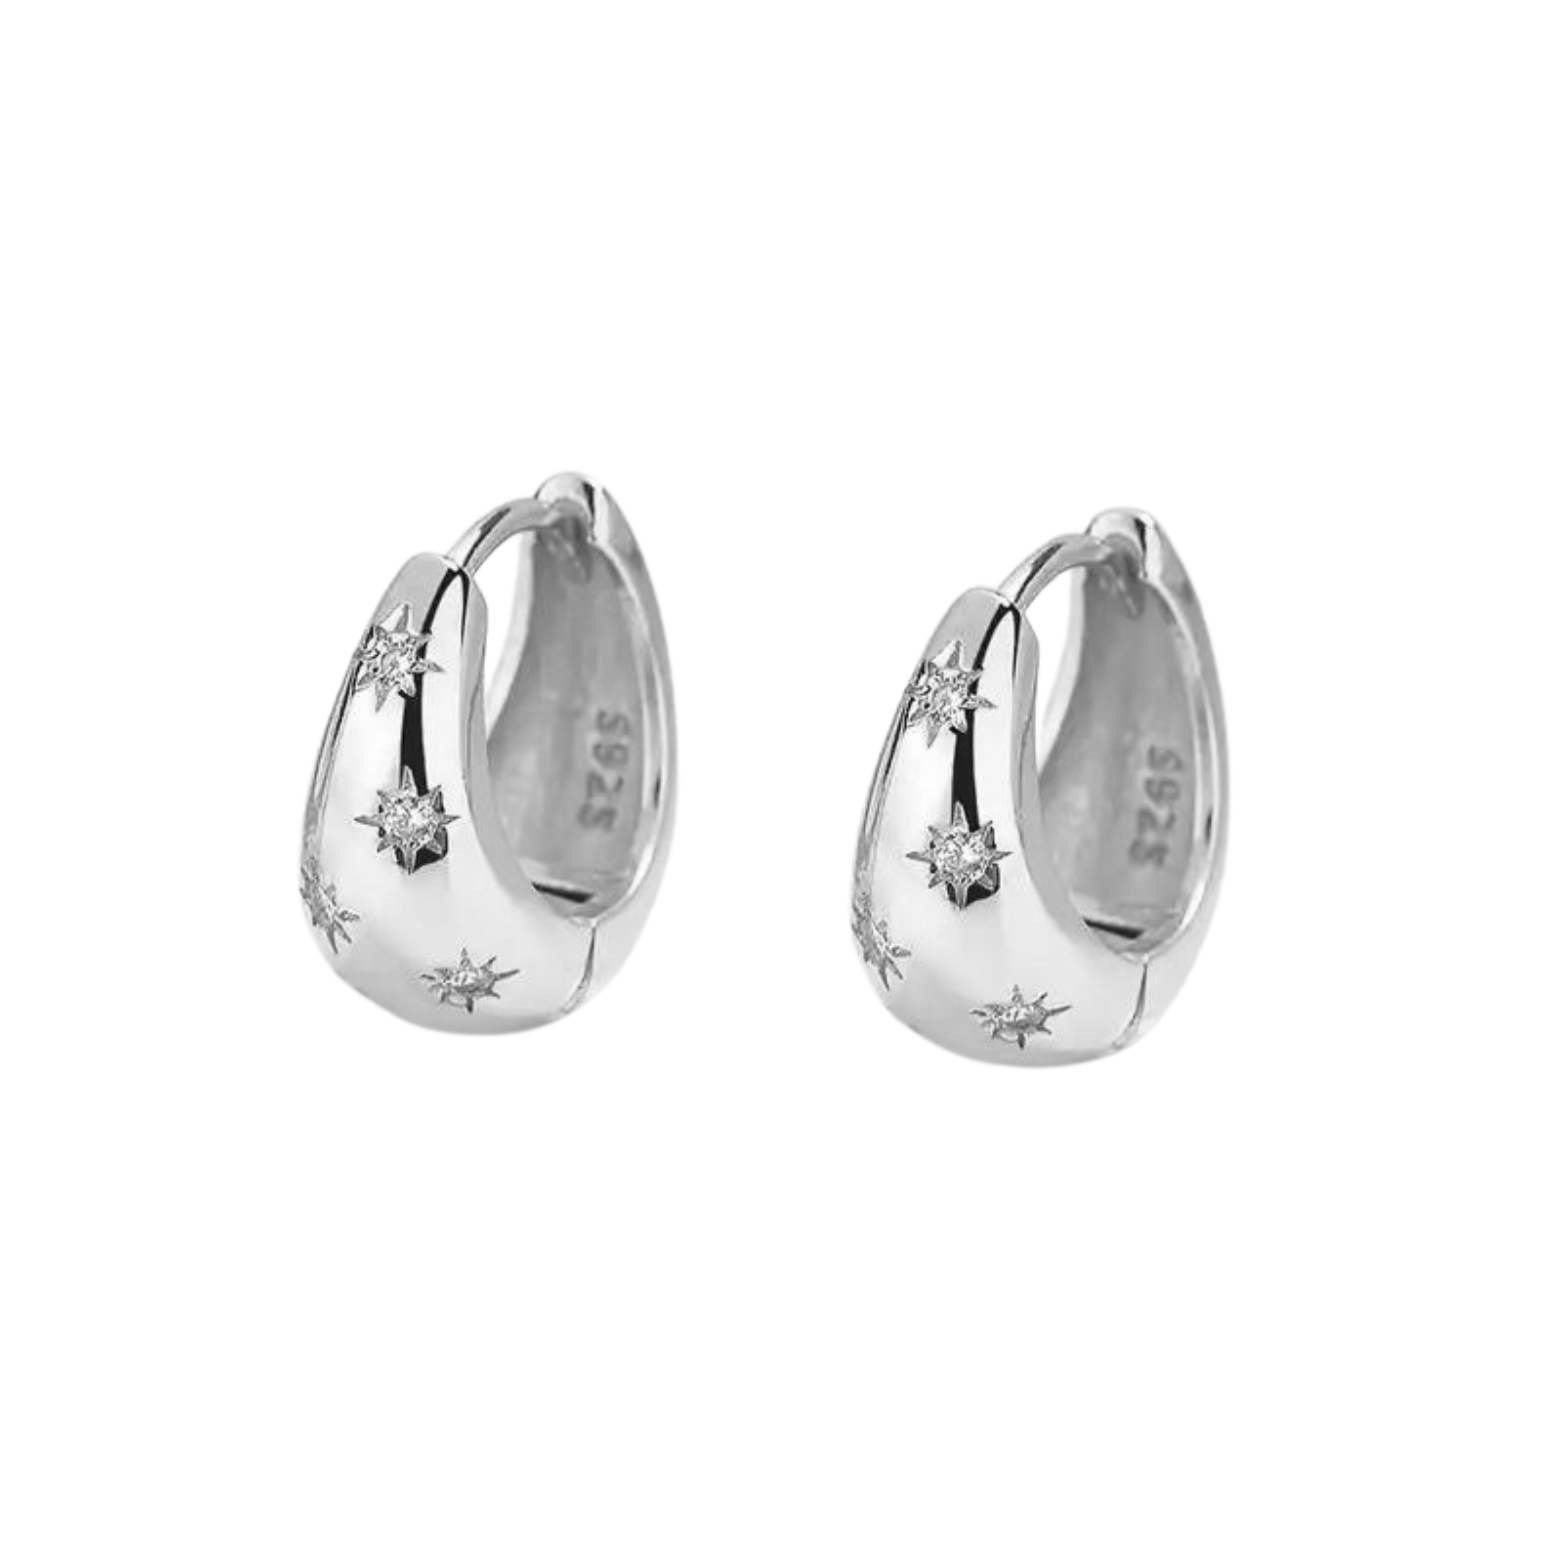 Sterling silver Orali hoop earrings with star details